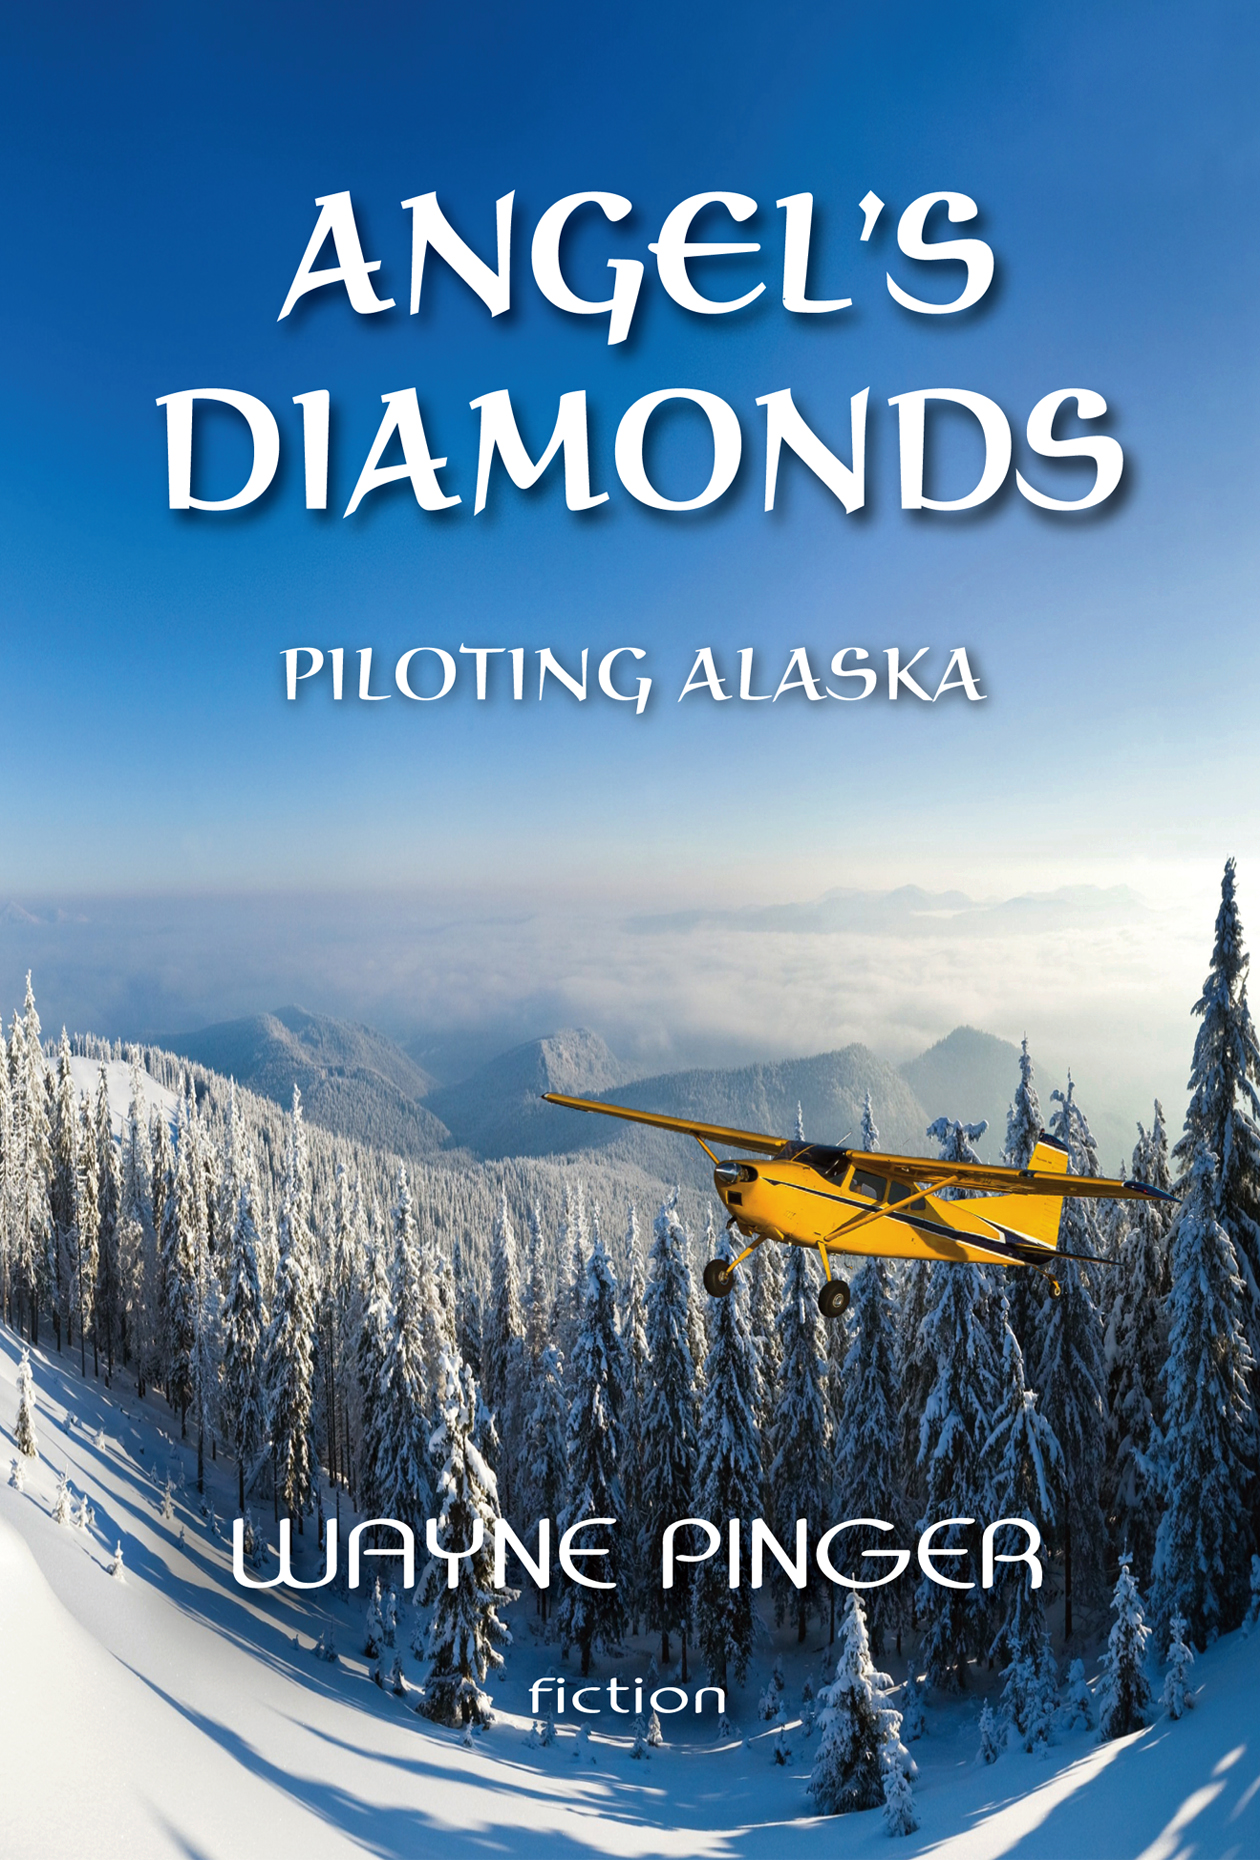 Angel's Diamonds by Wayne Pinger, from Firefallmedia